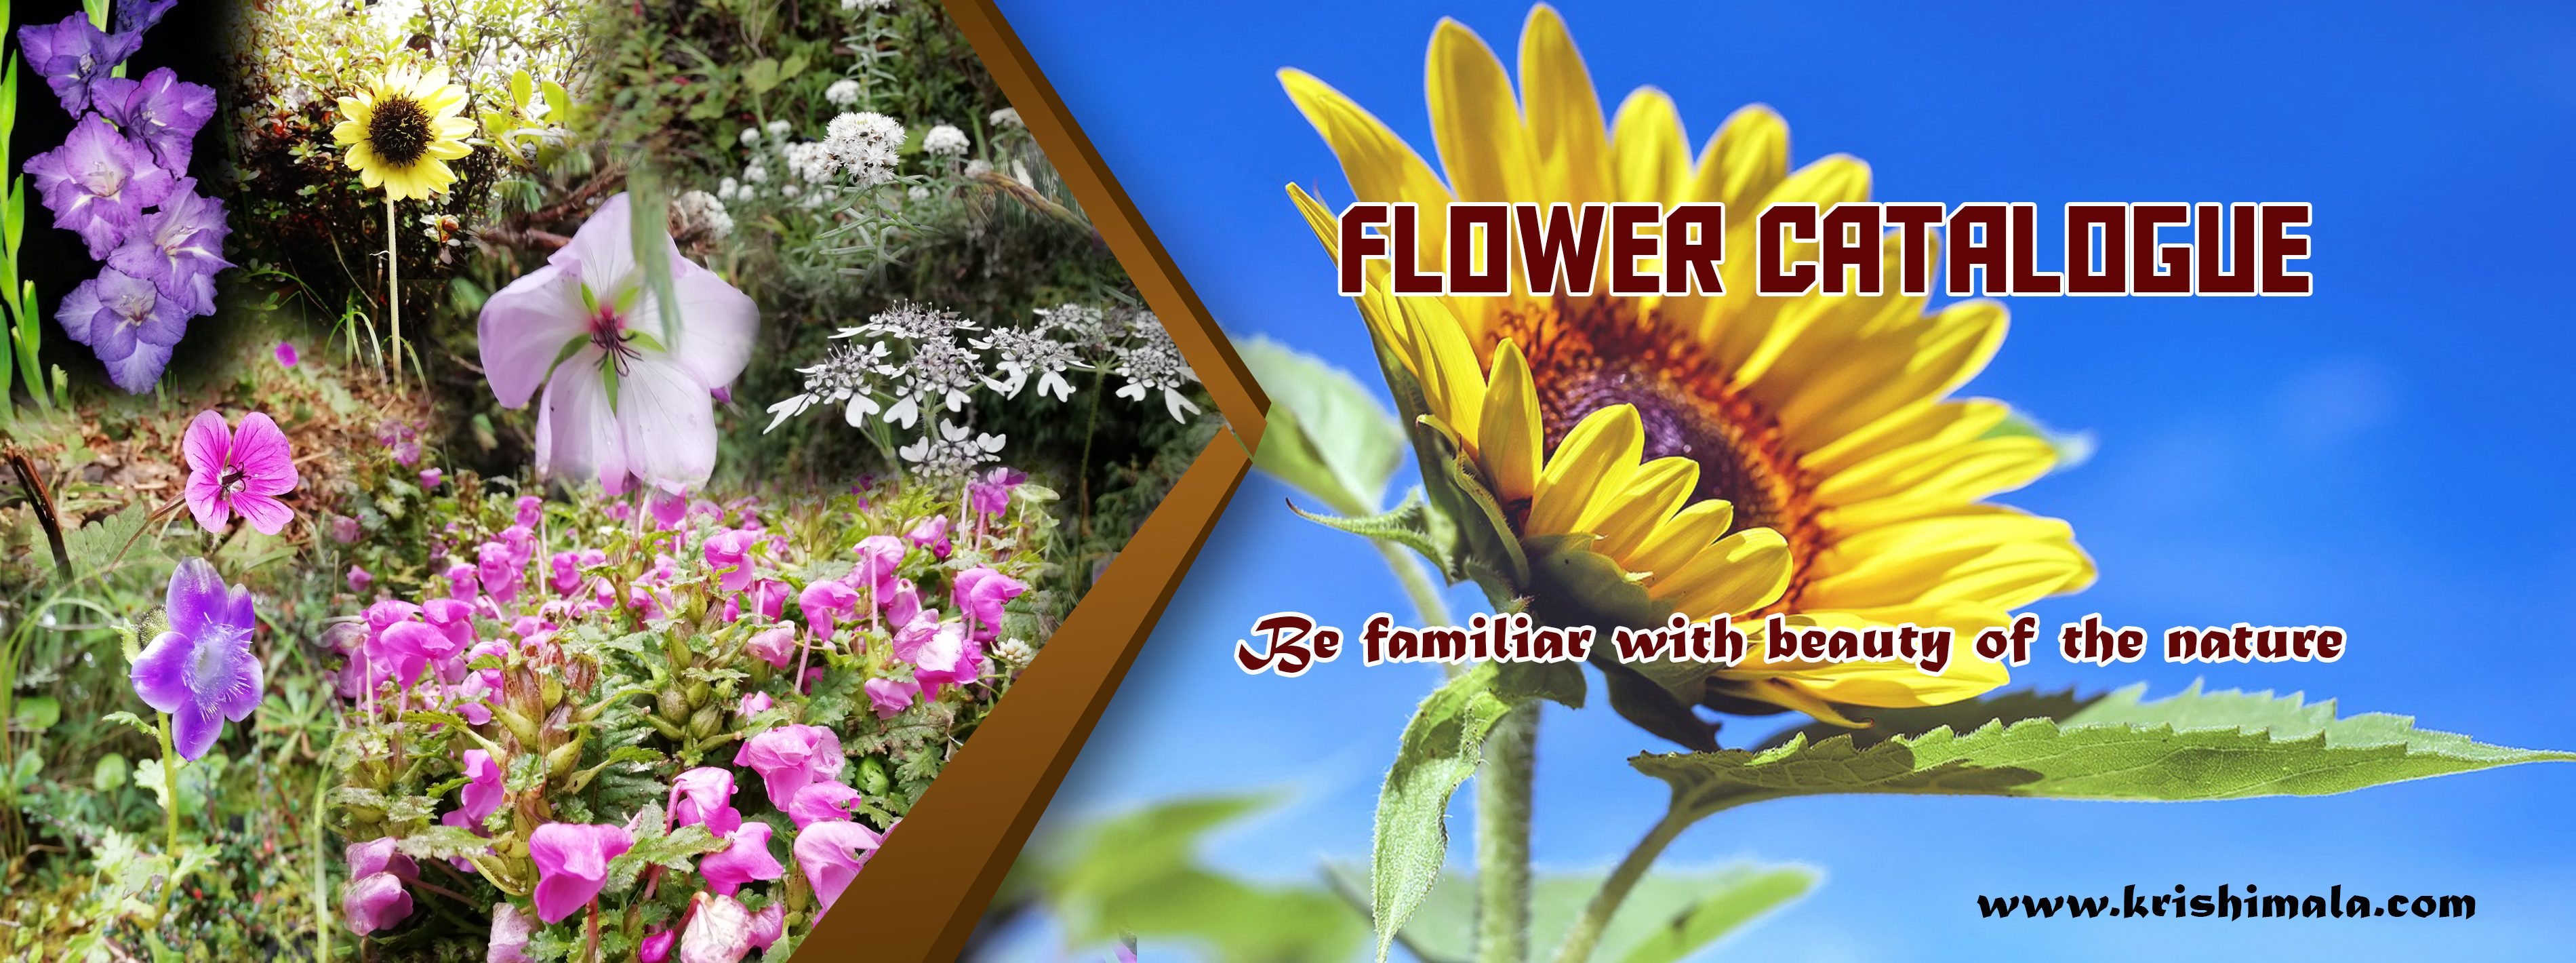 flower catalogue.jpg